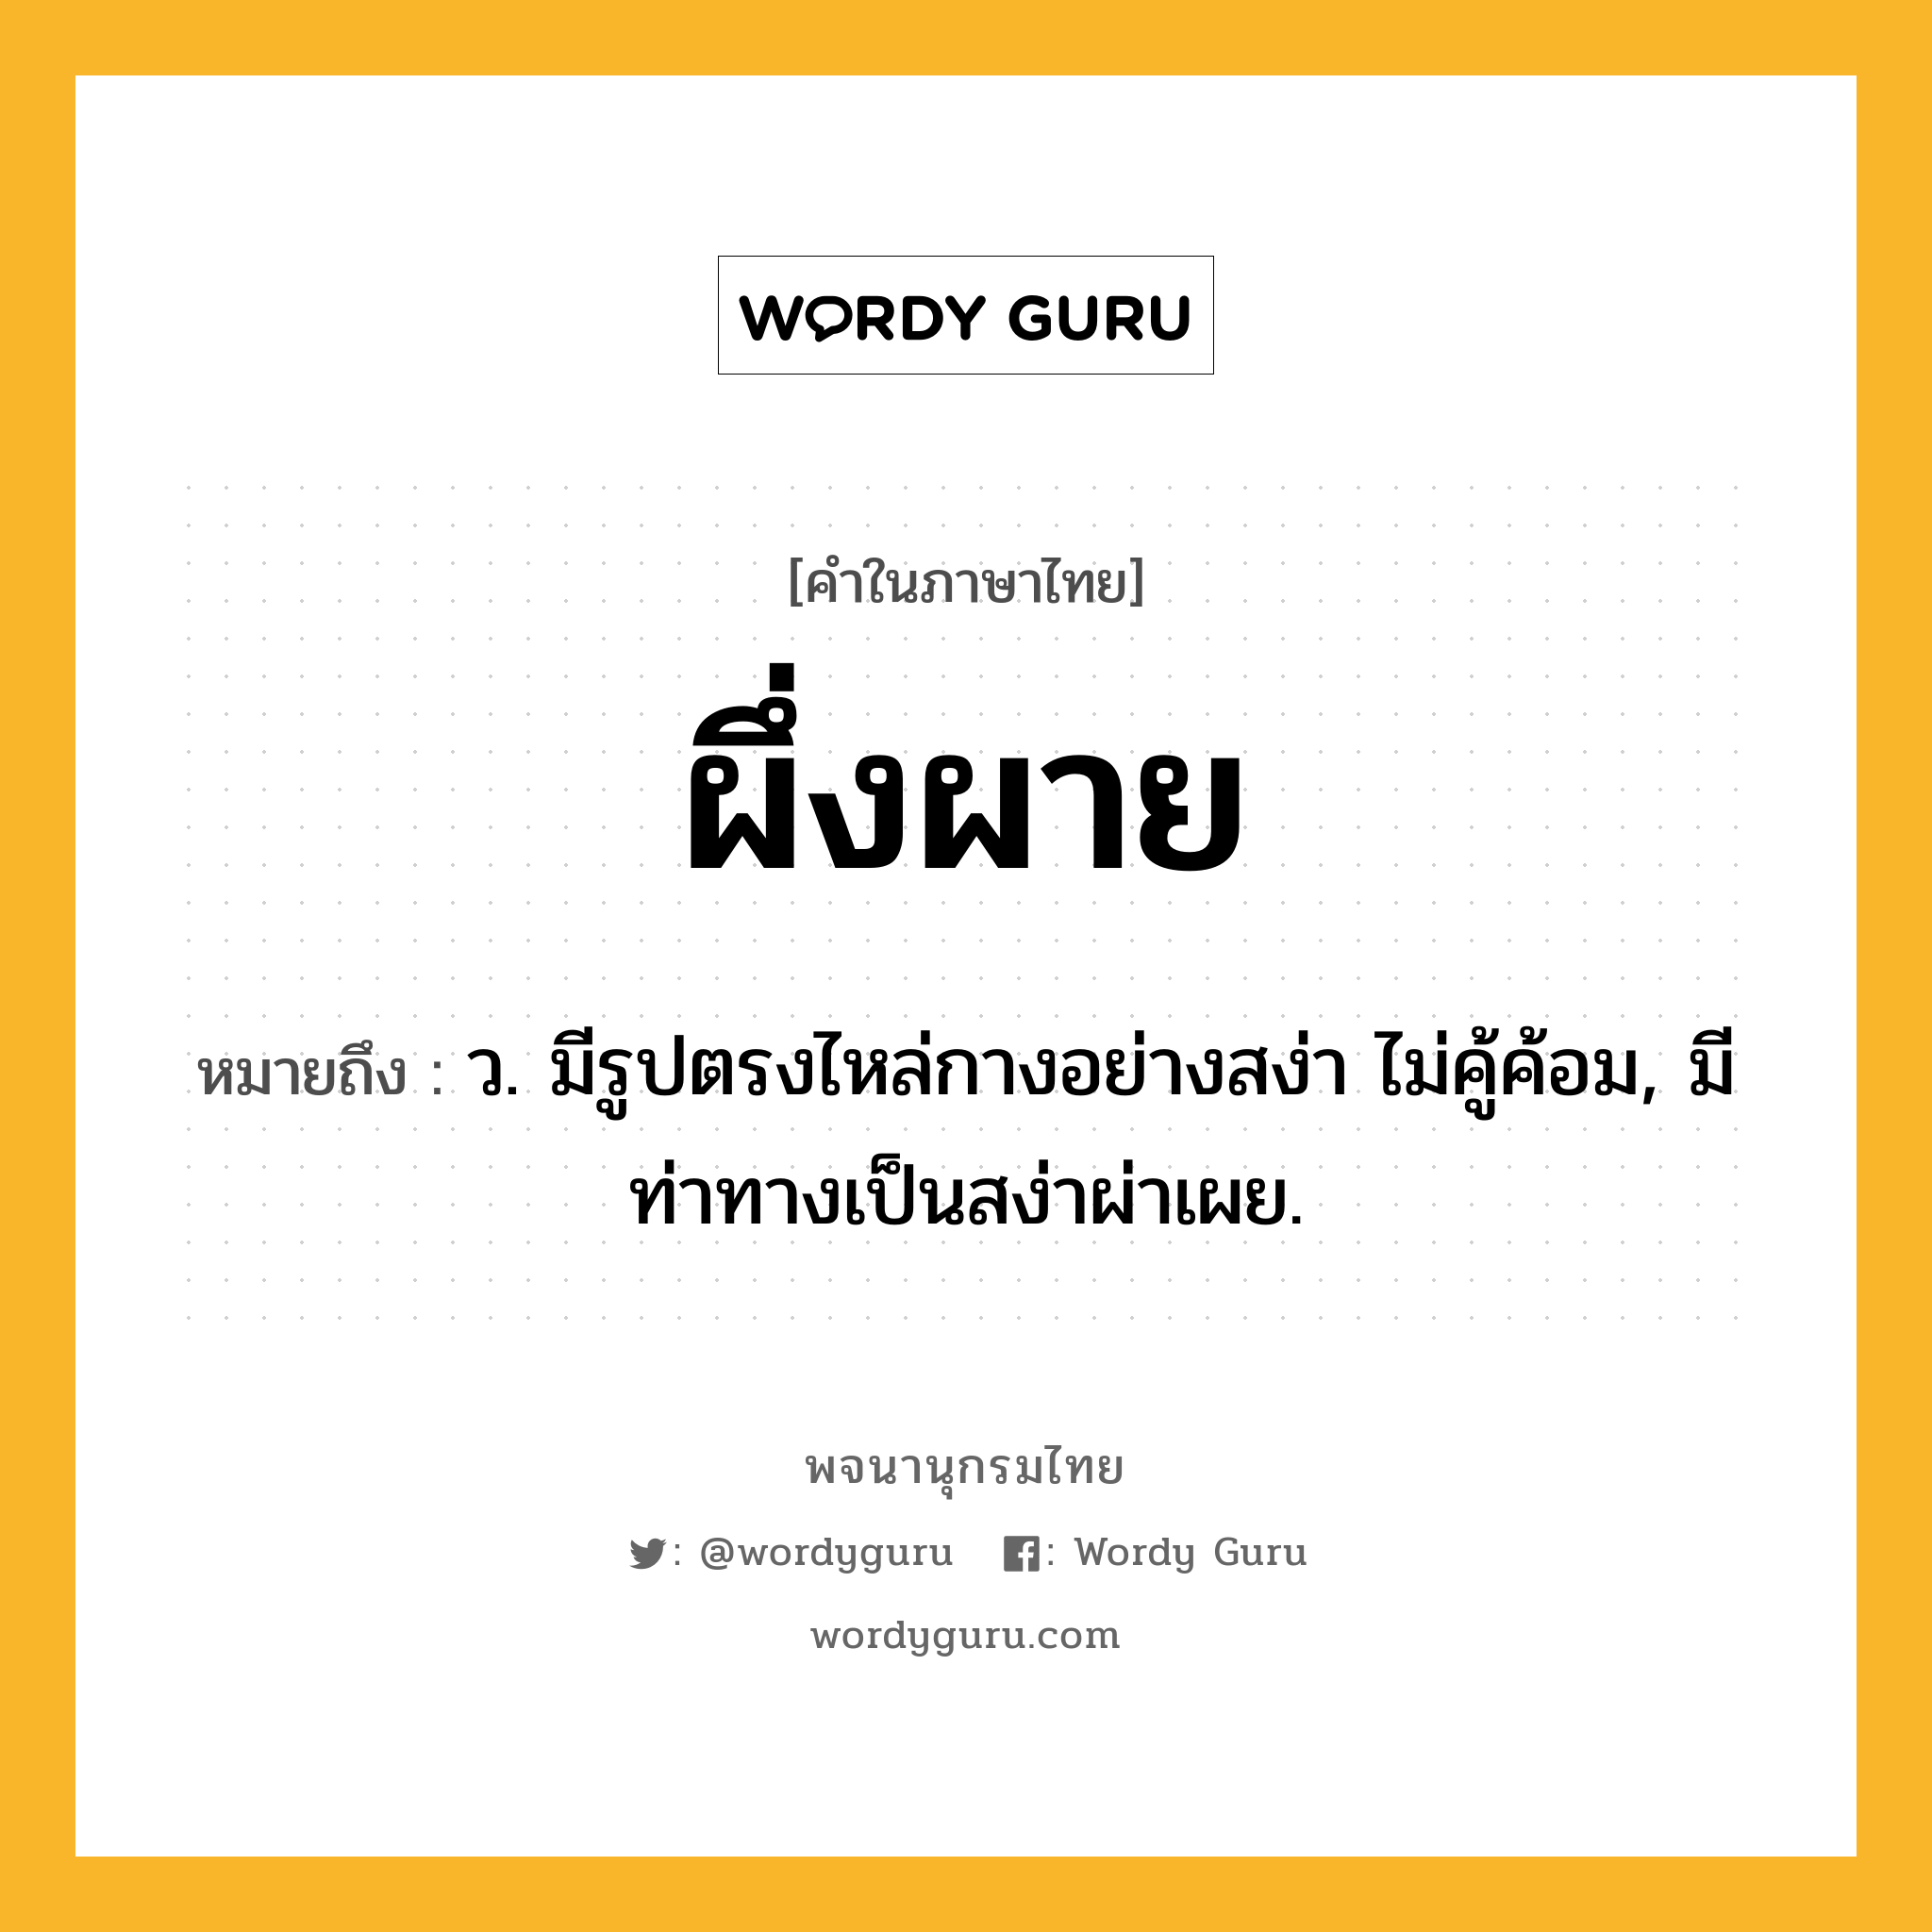 ผึ่งผาย ความหมาย หมายถึงอะไร?, คำในภาษาไทย ผึ่งผาย หมายถึง ว. มีรูปตรงไหล่กางอย่างสง่า ไม่คู้ค้อม, มีท่าทางเป็นสง่าผ่าเผย.